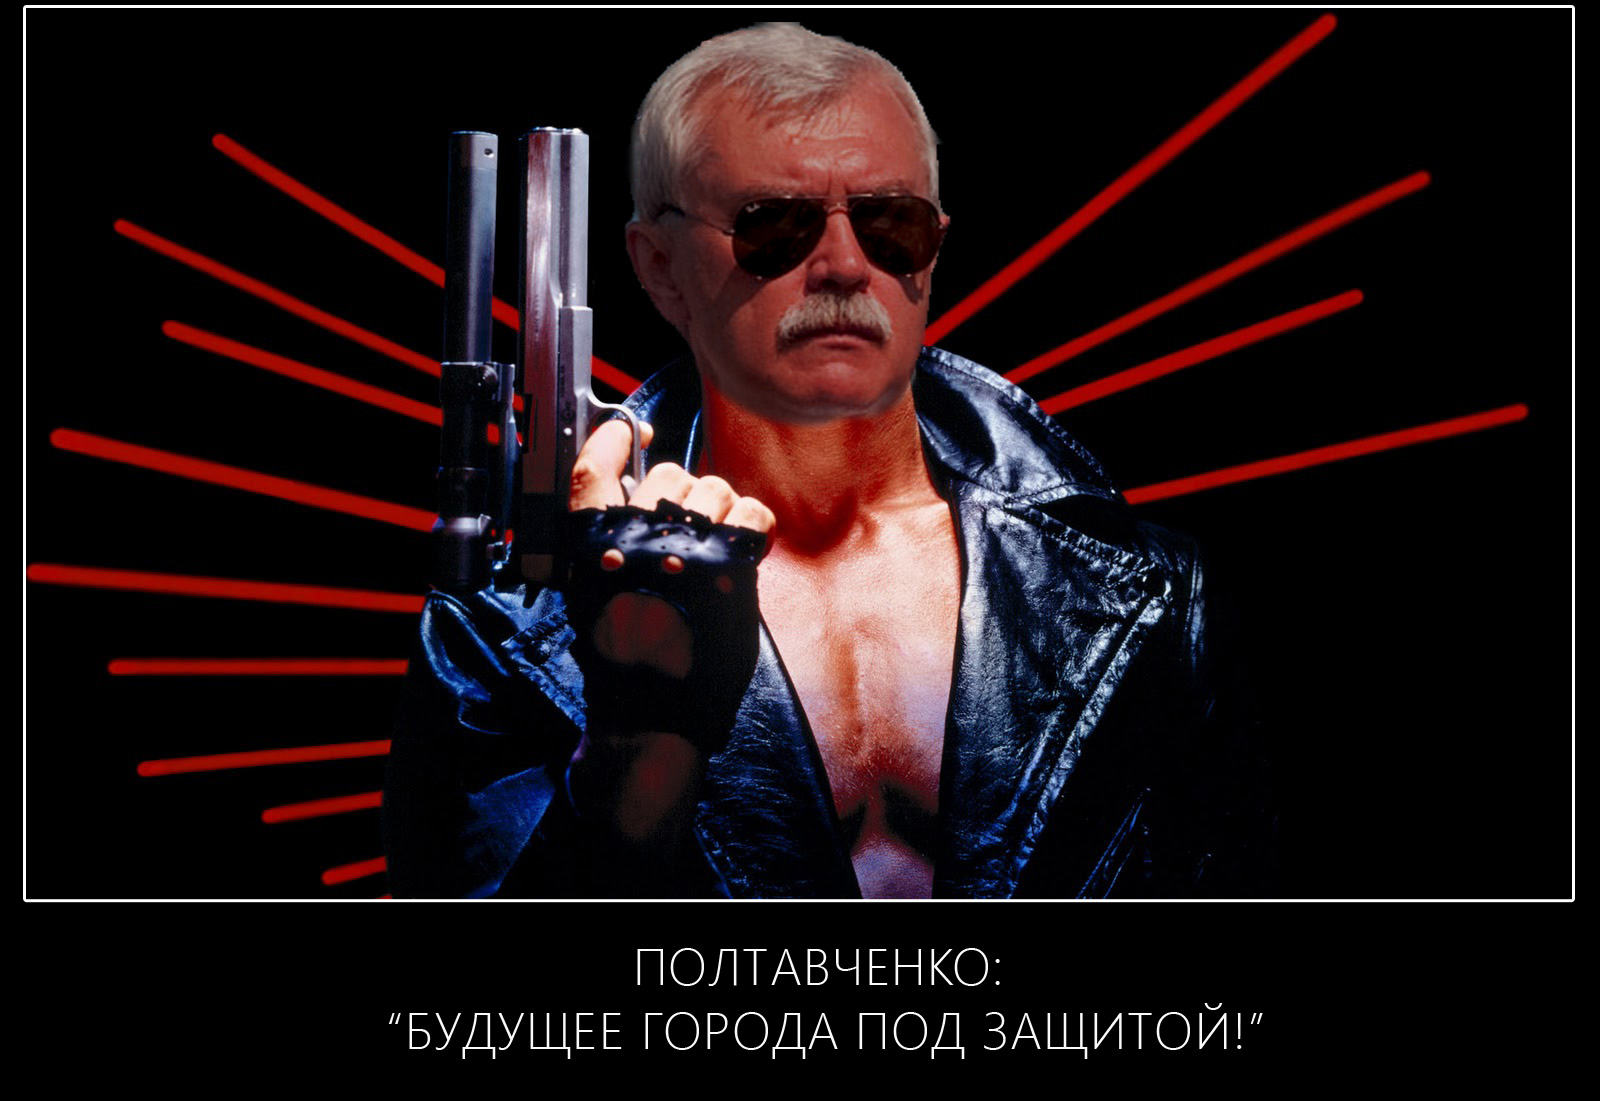 Терминатор Полтавченко ))